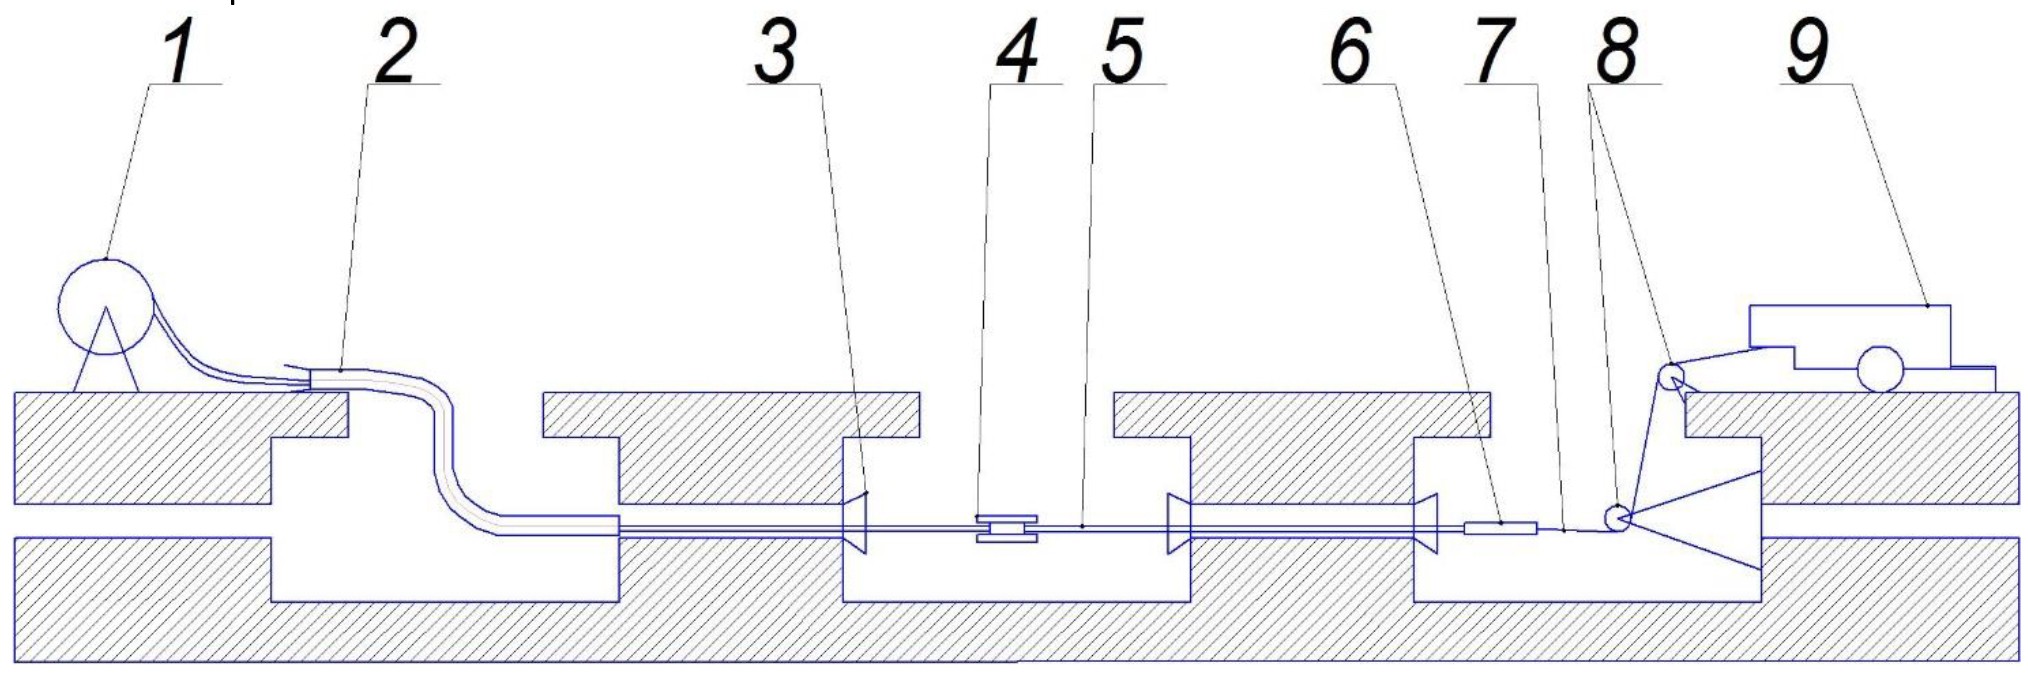 Схема протягивания кабеля в канализации